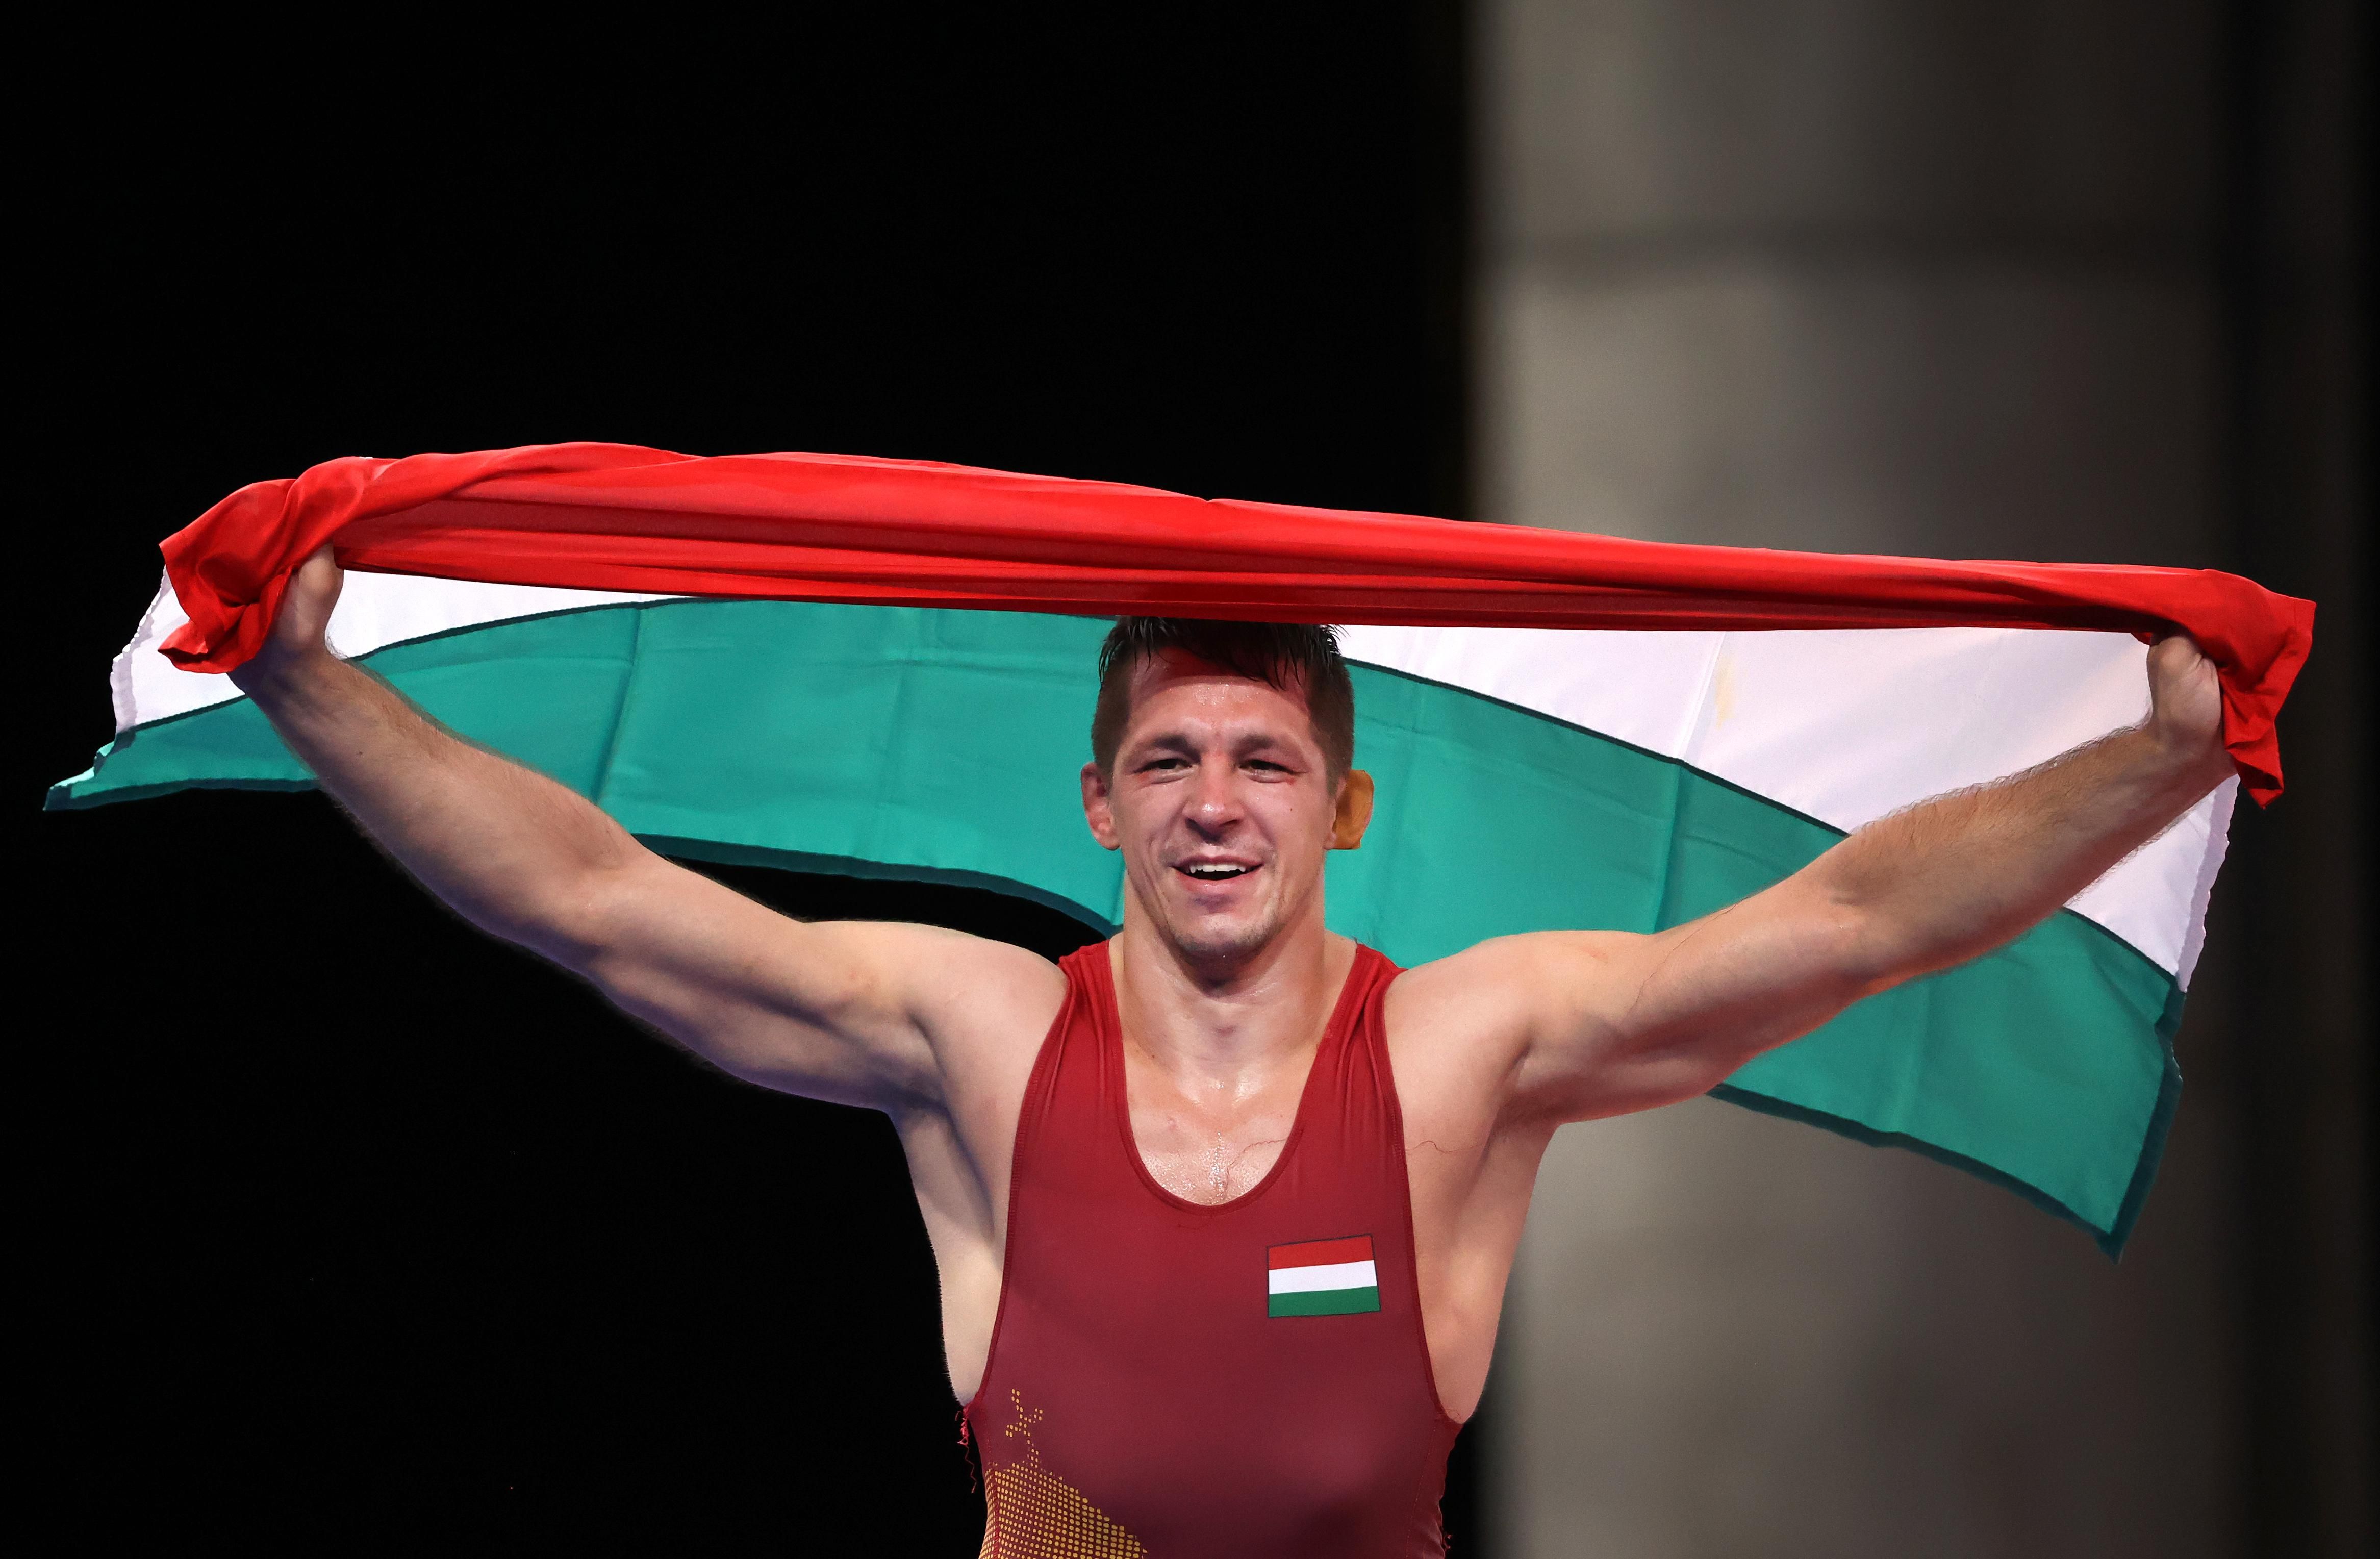 Lőrincz Tamás a magyar zászlót lengeti miután megnyerte a a 77 kilogrammos mezőnyben birkózásban aranyérmet szerzett a tokiói olimpián